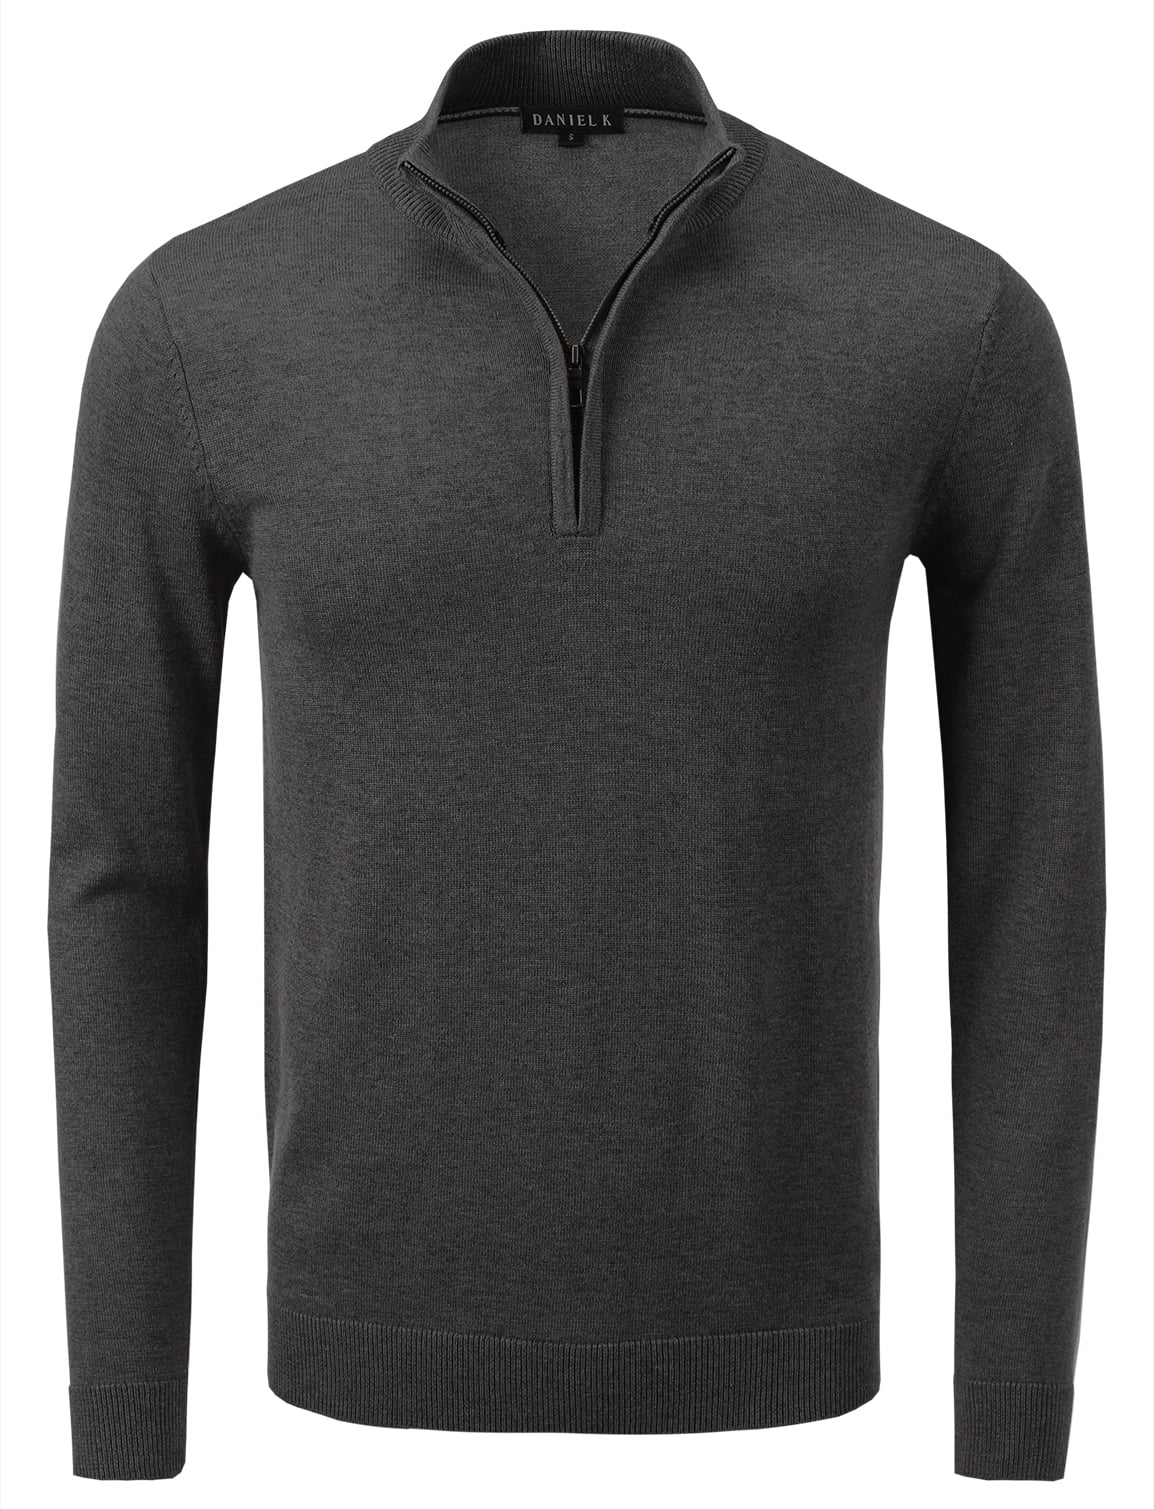 Daniel K Men's Vintage Half Zip-Front Mock Neck Sweater Dark Gray XL ...